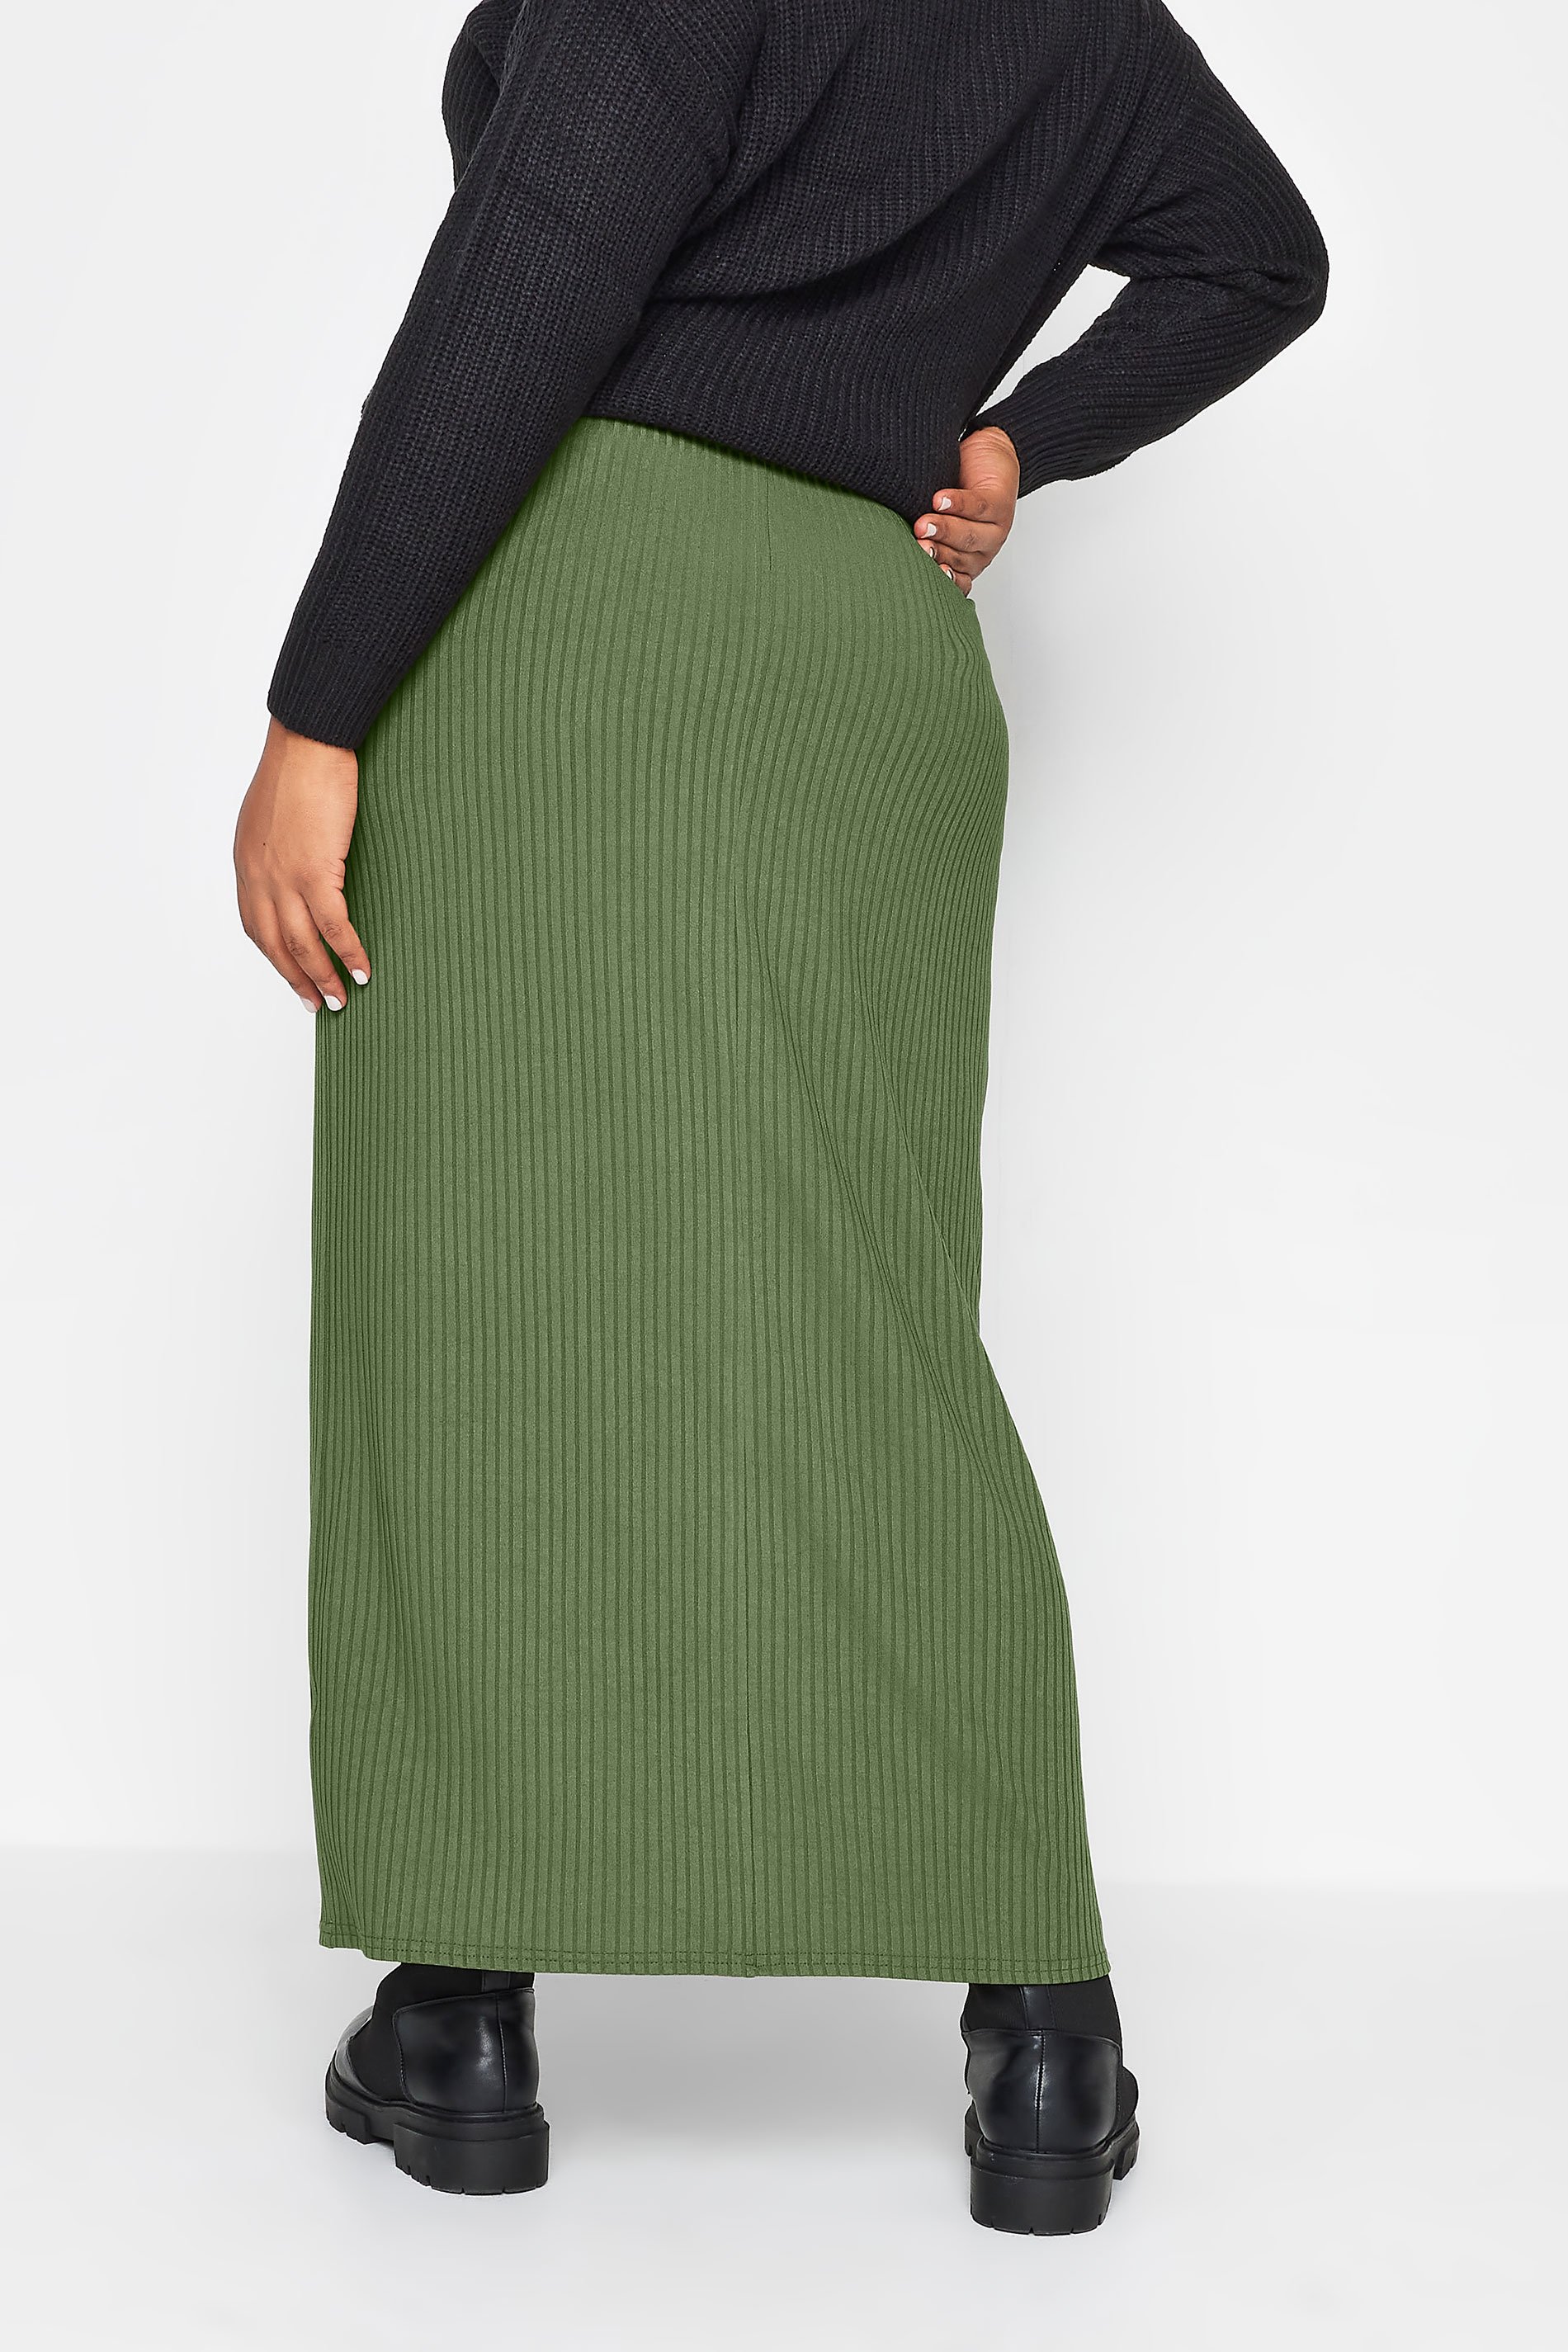 YOURS Plus Size Khaki Ribbed Maxi Skirt | Yours Clothing 3